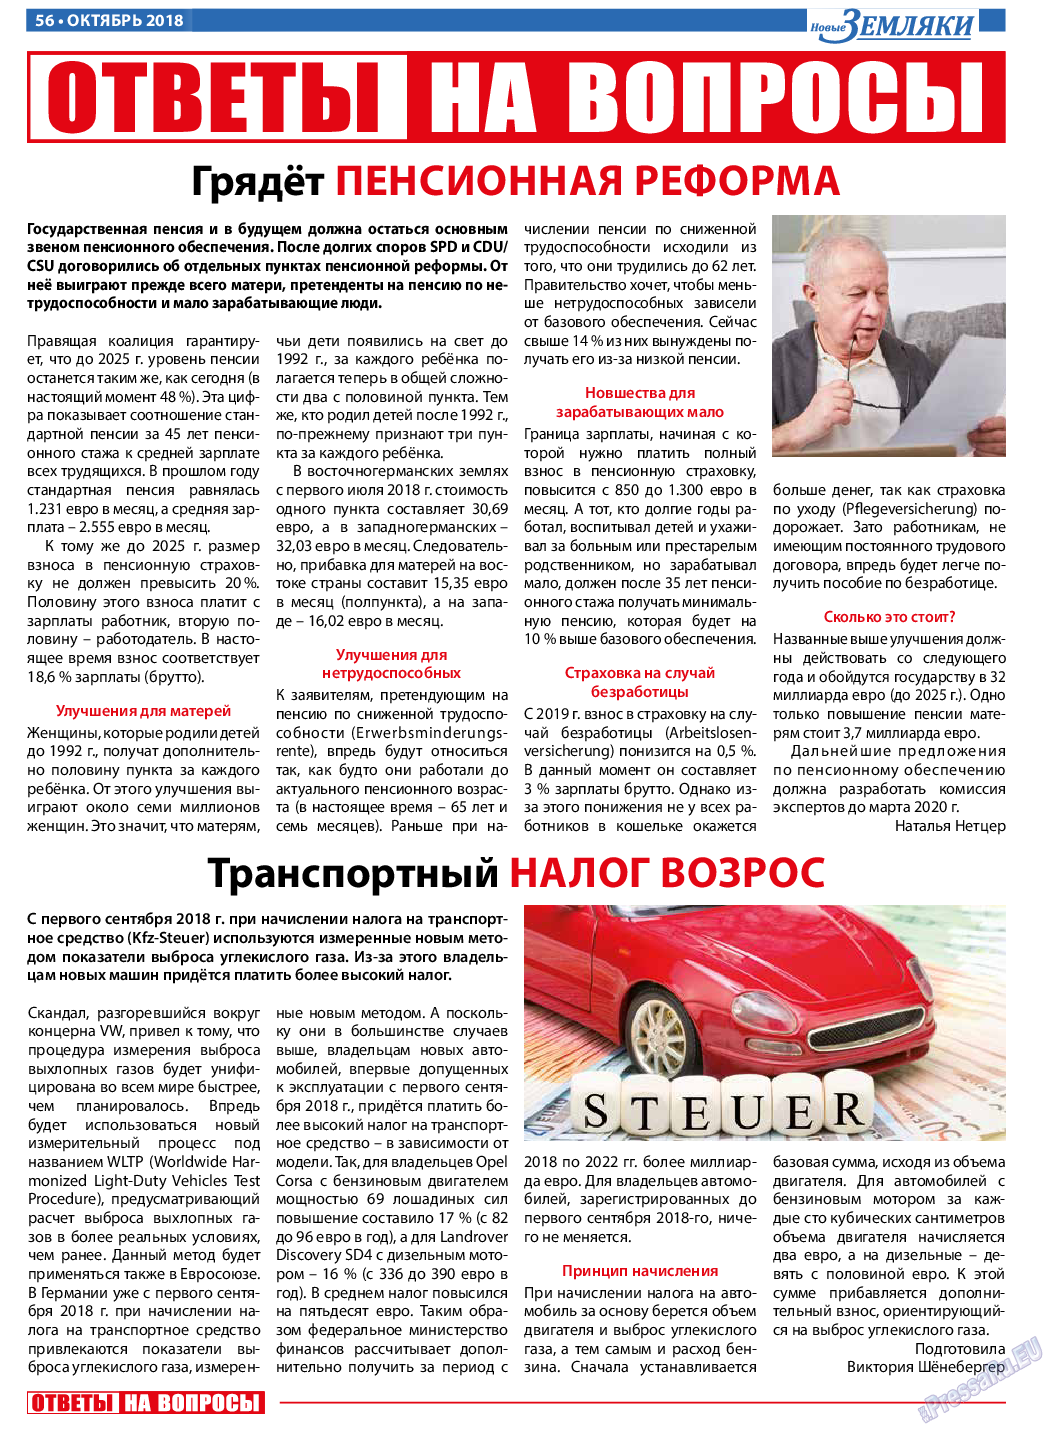 Новые Земляки, газета. 2018 №10 стр.56